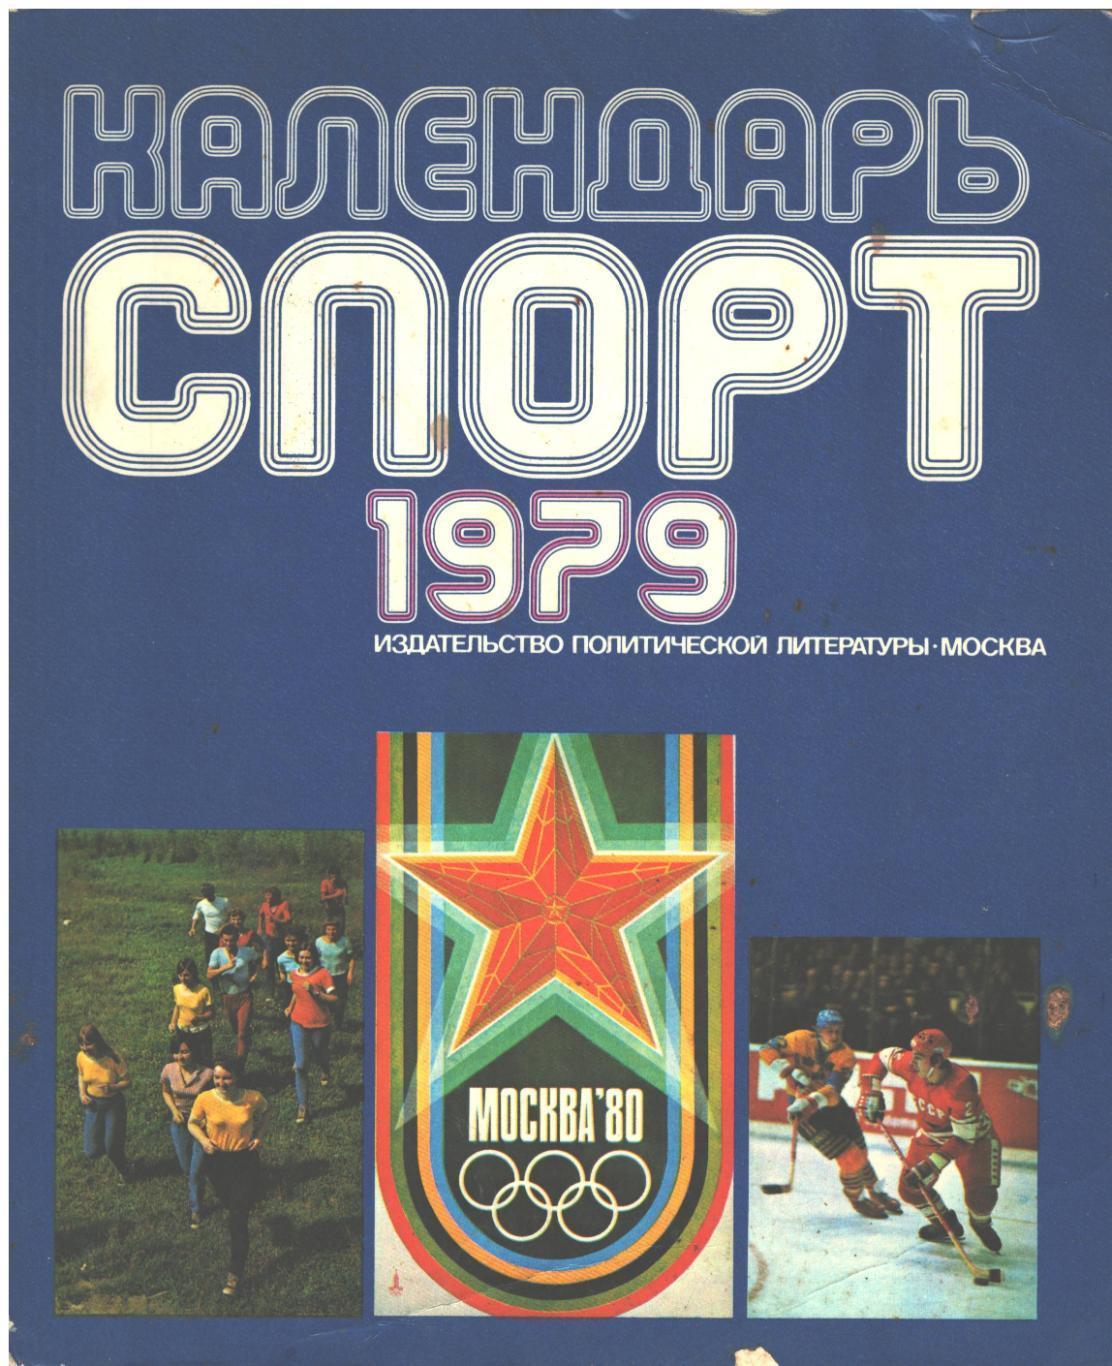 Спорт календарь - 1979